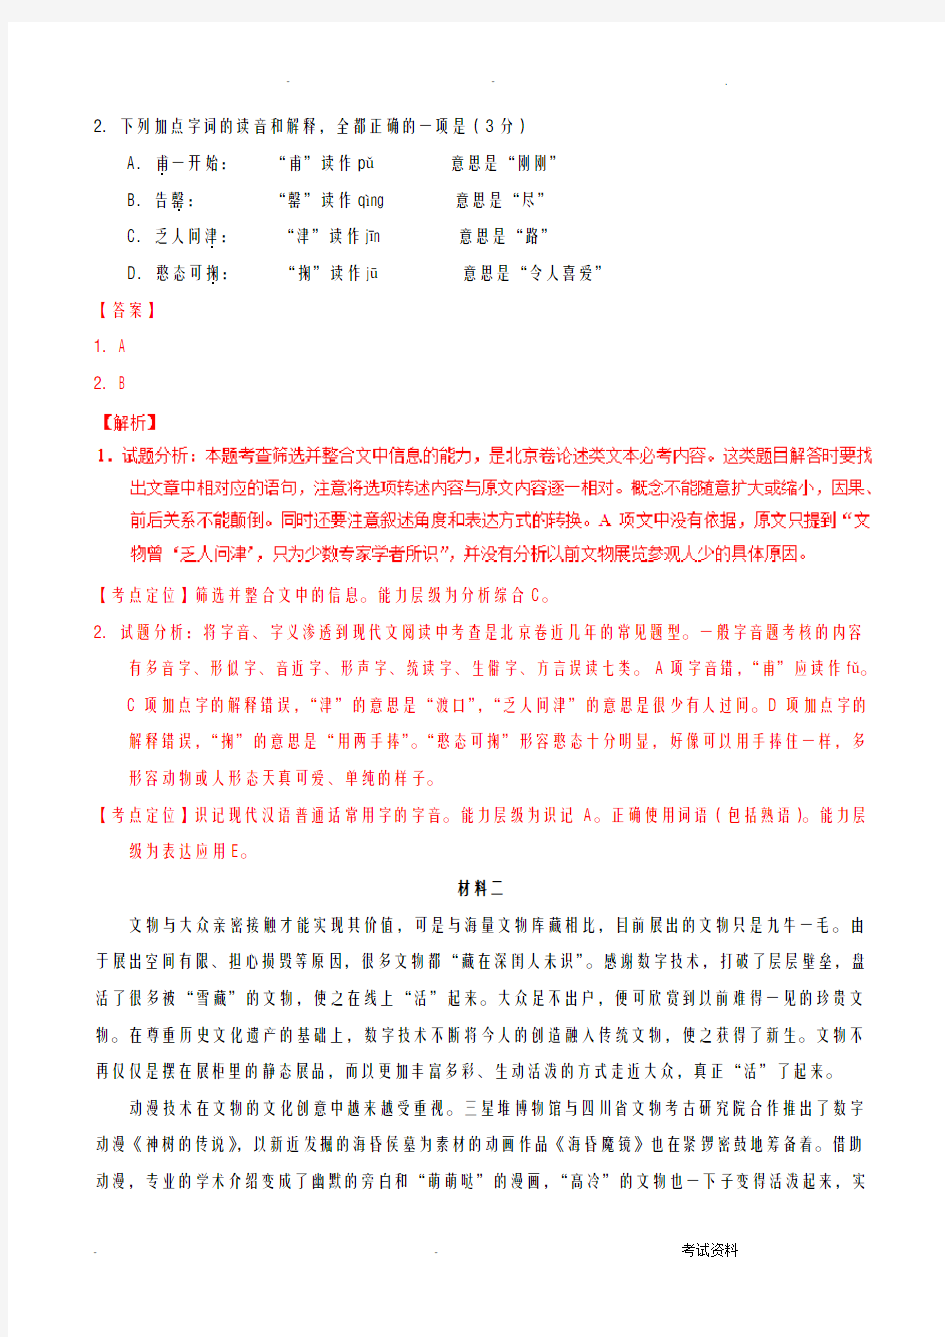 2017年高考北京卷语文试题解析正式版解析版